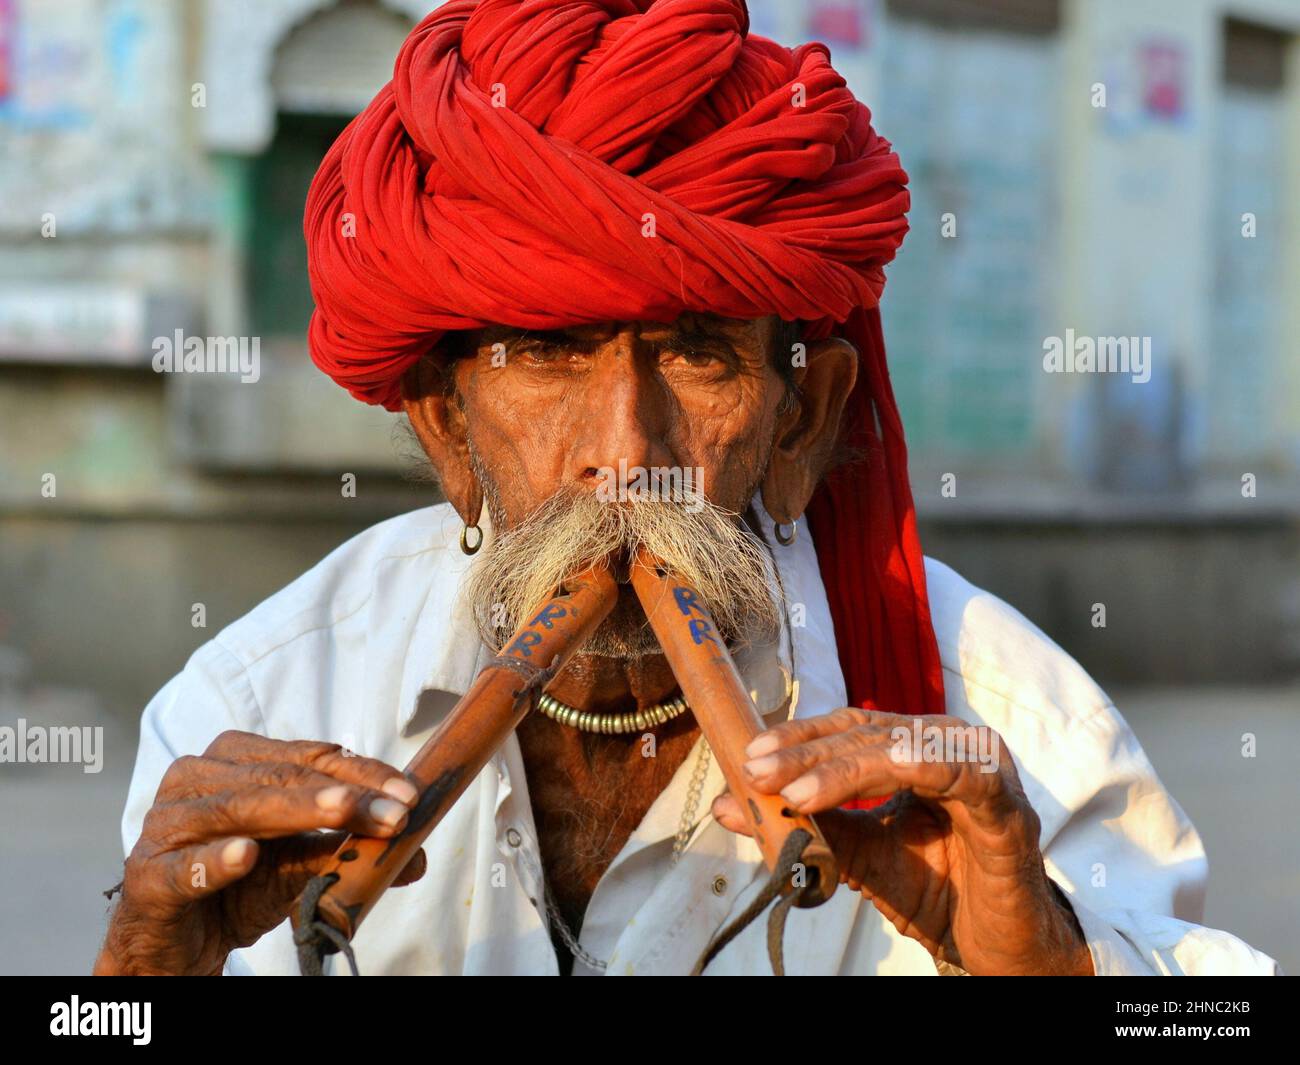 El anciano jugador de flauta doble de alghoza indio lleva un turbante rojo Rajasthani (pagari) y toca sus instrumentos tradicionales de viento de madera con dos manos. Foto de stock